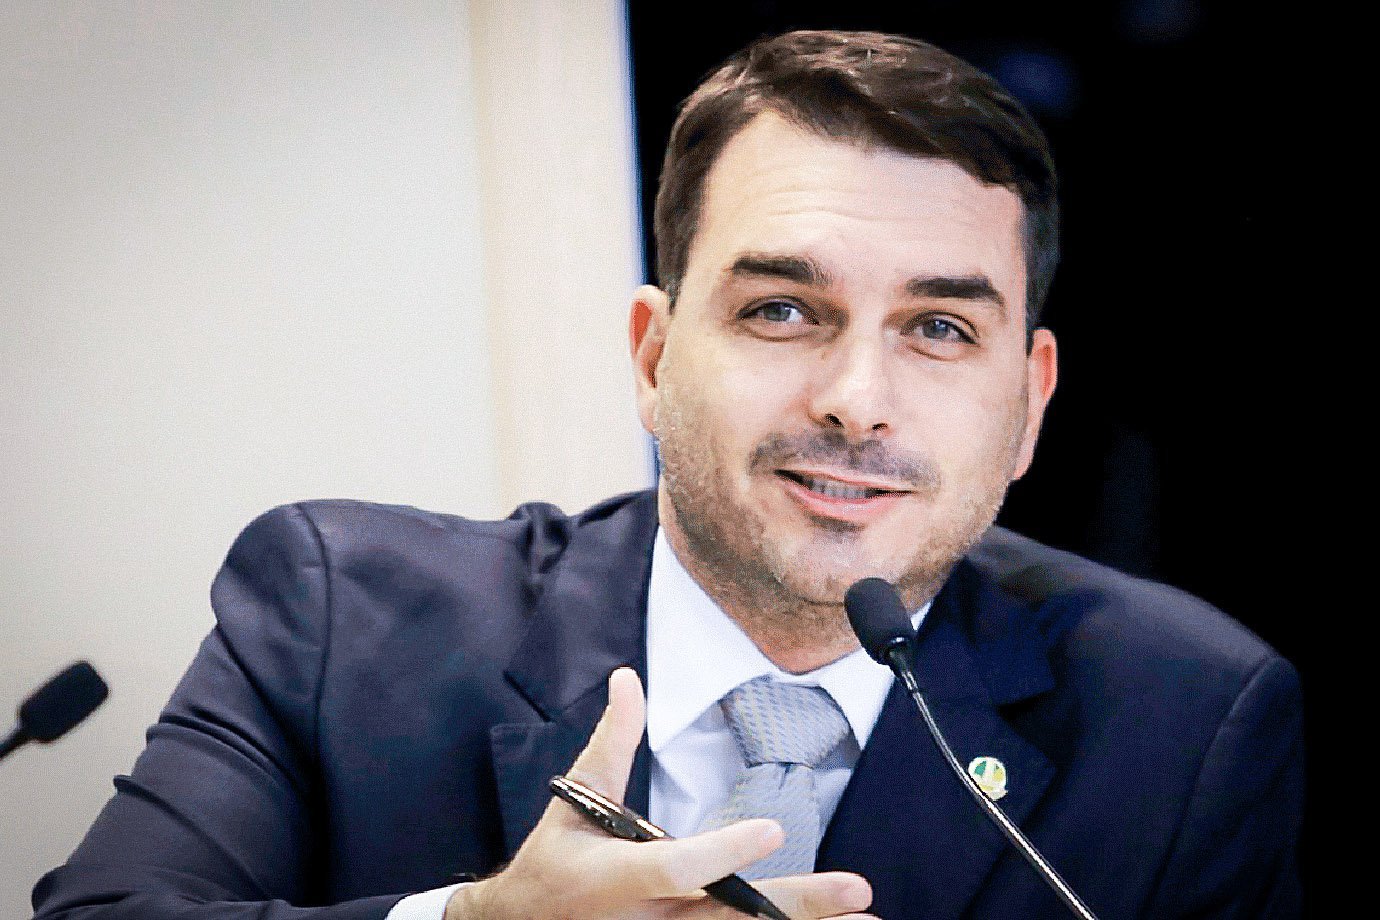 Senador Flávio Bolsonaro participa de assinatura de contrato de adesão do Terminal UTE GNA I do Porto do Açú - para movimentação de GNL (Gás Natural Liquefeito).